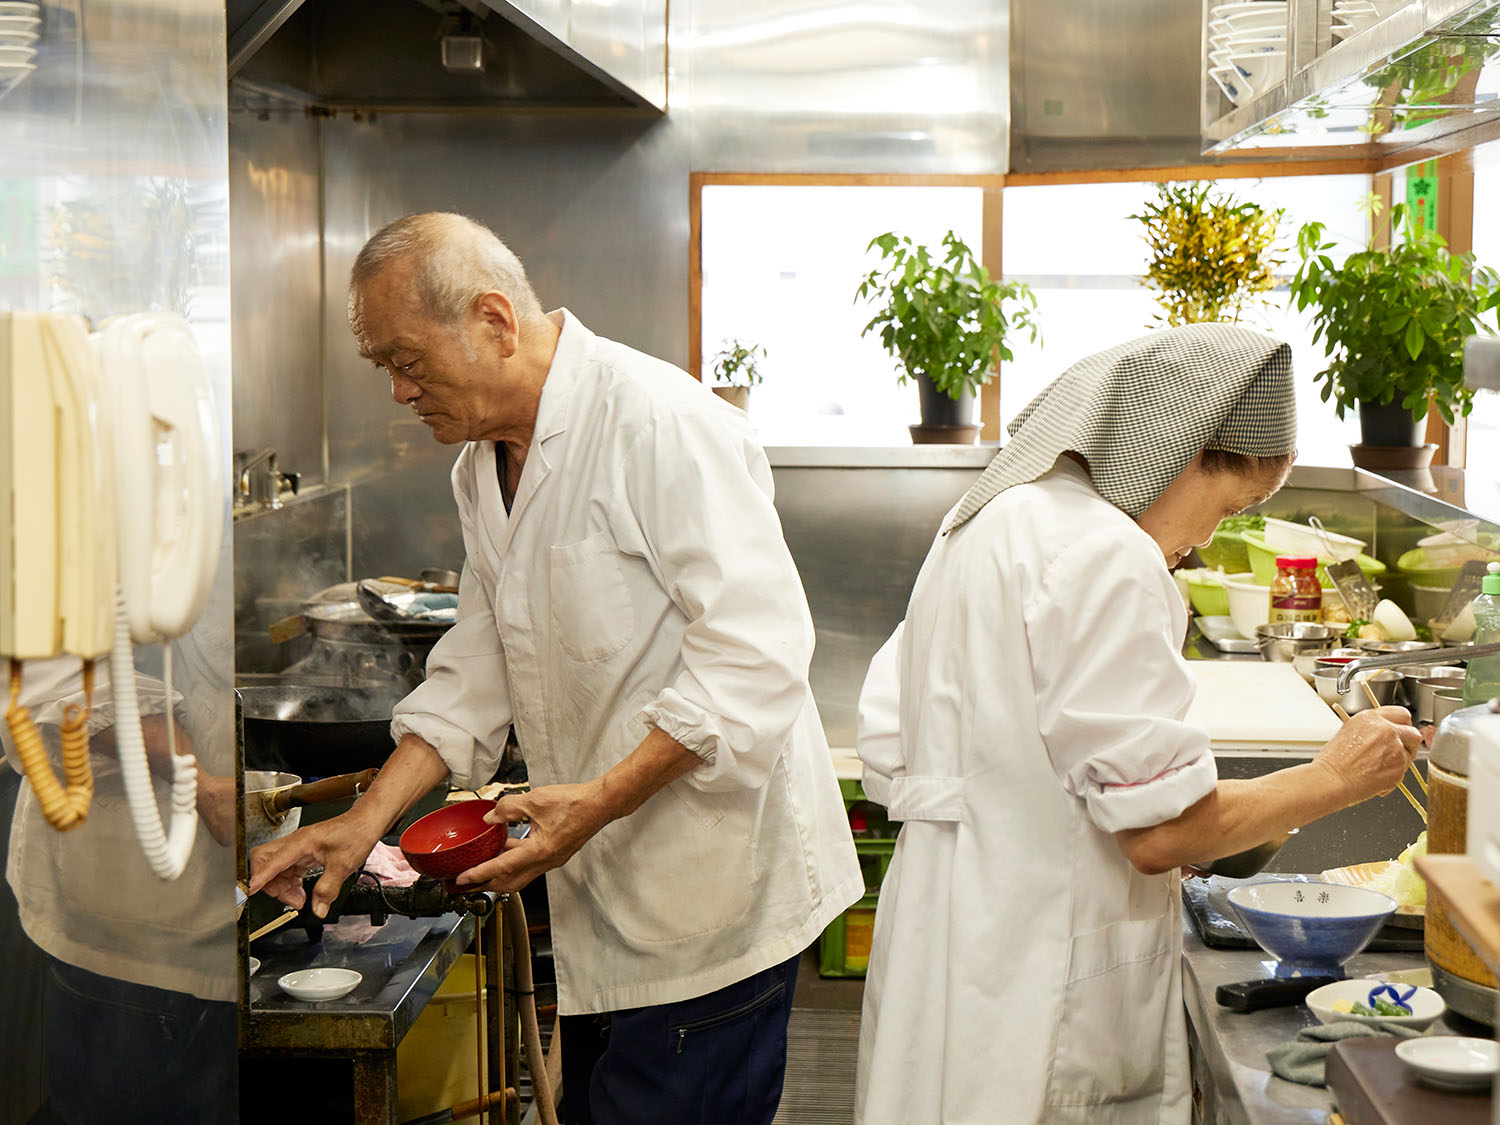 久芳さんが鍋、和子さんが盛り付け担当だが、夫婦揃って料理人。連携プレーが見事だ。